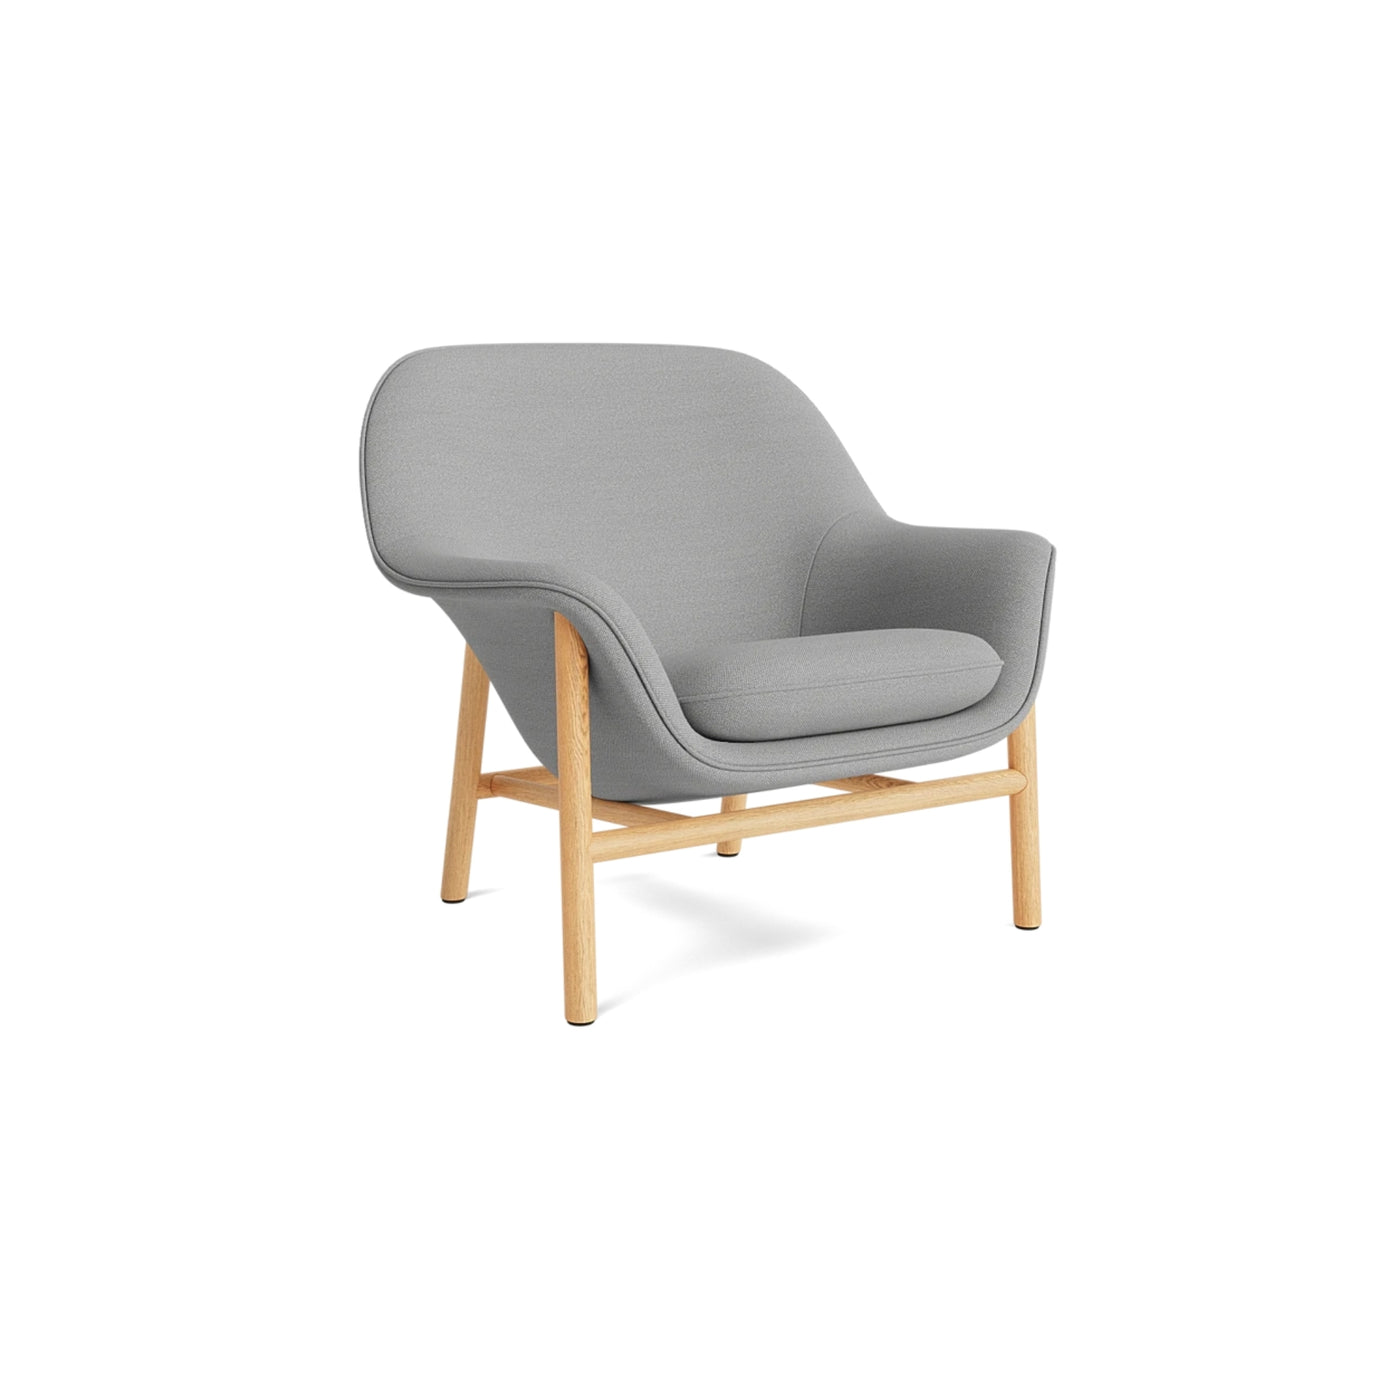 Normann Copenhagen Drape Lounge Chair at someday designs. #colour_hallingdal-123